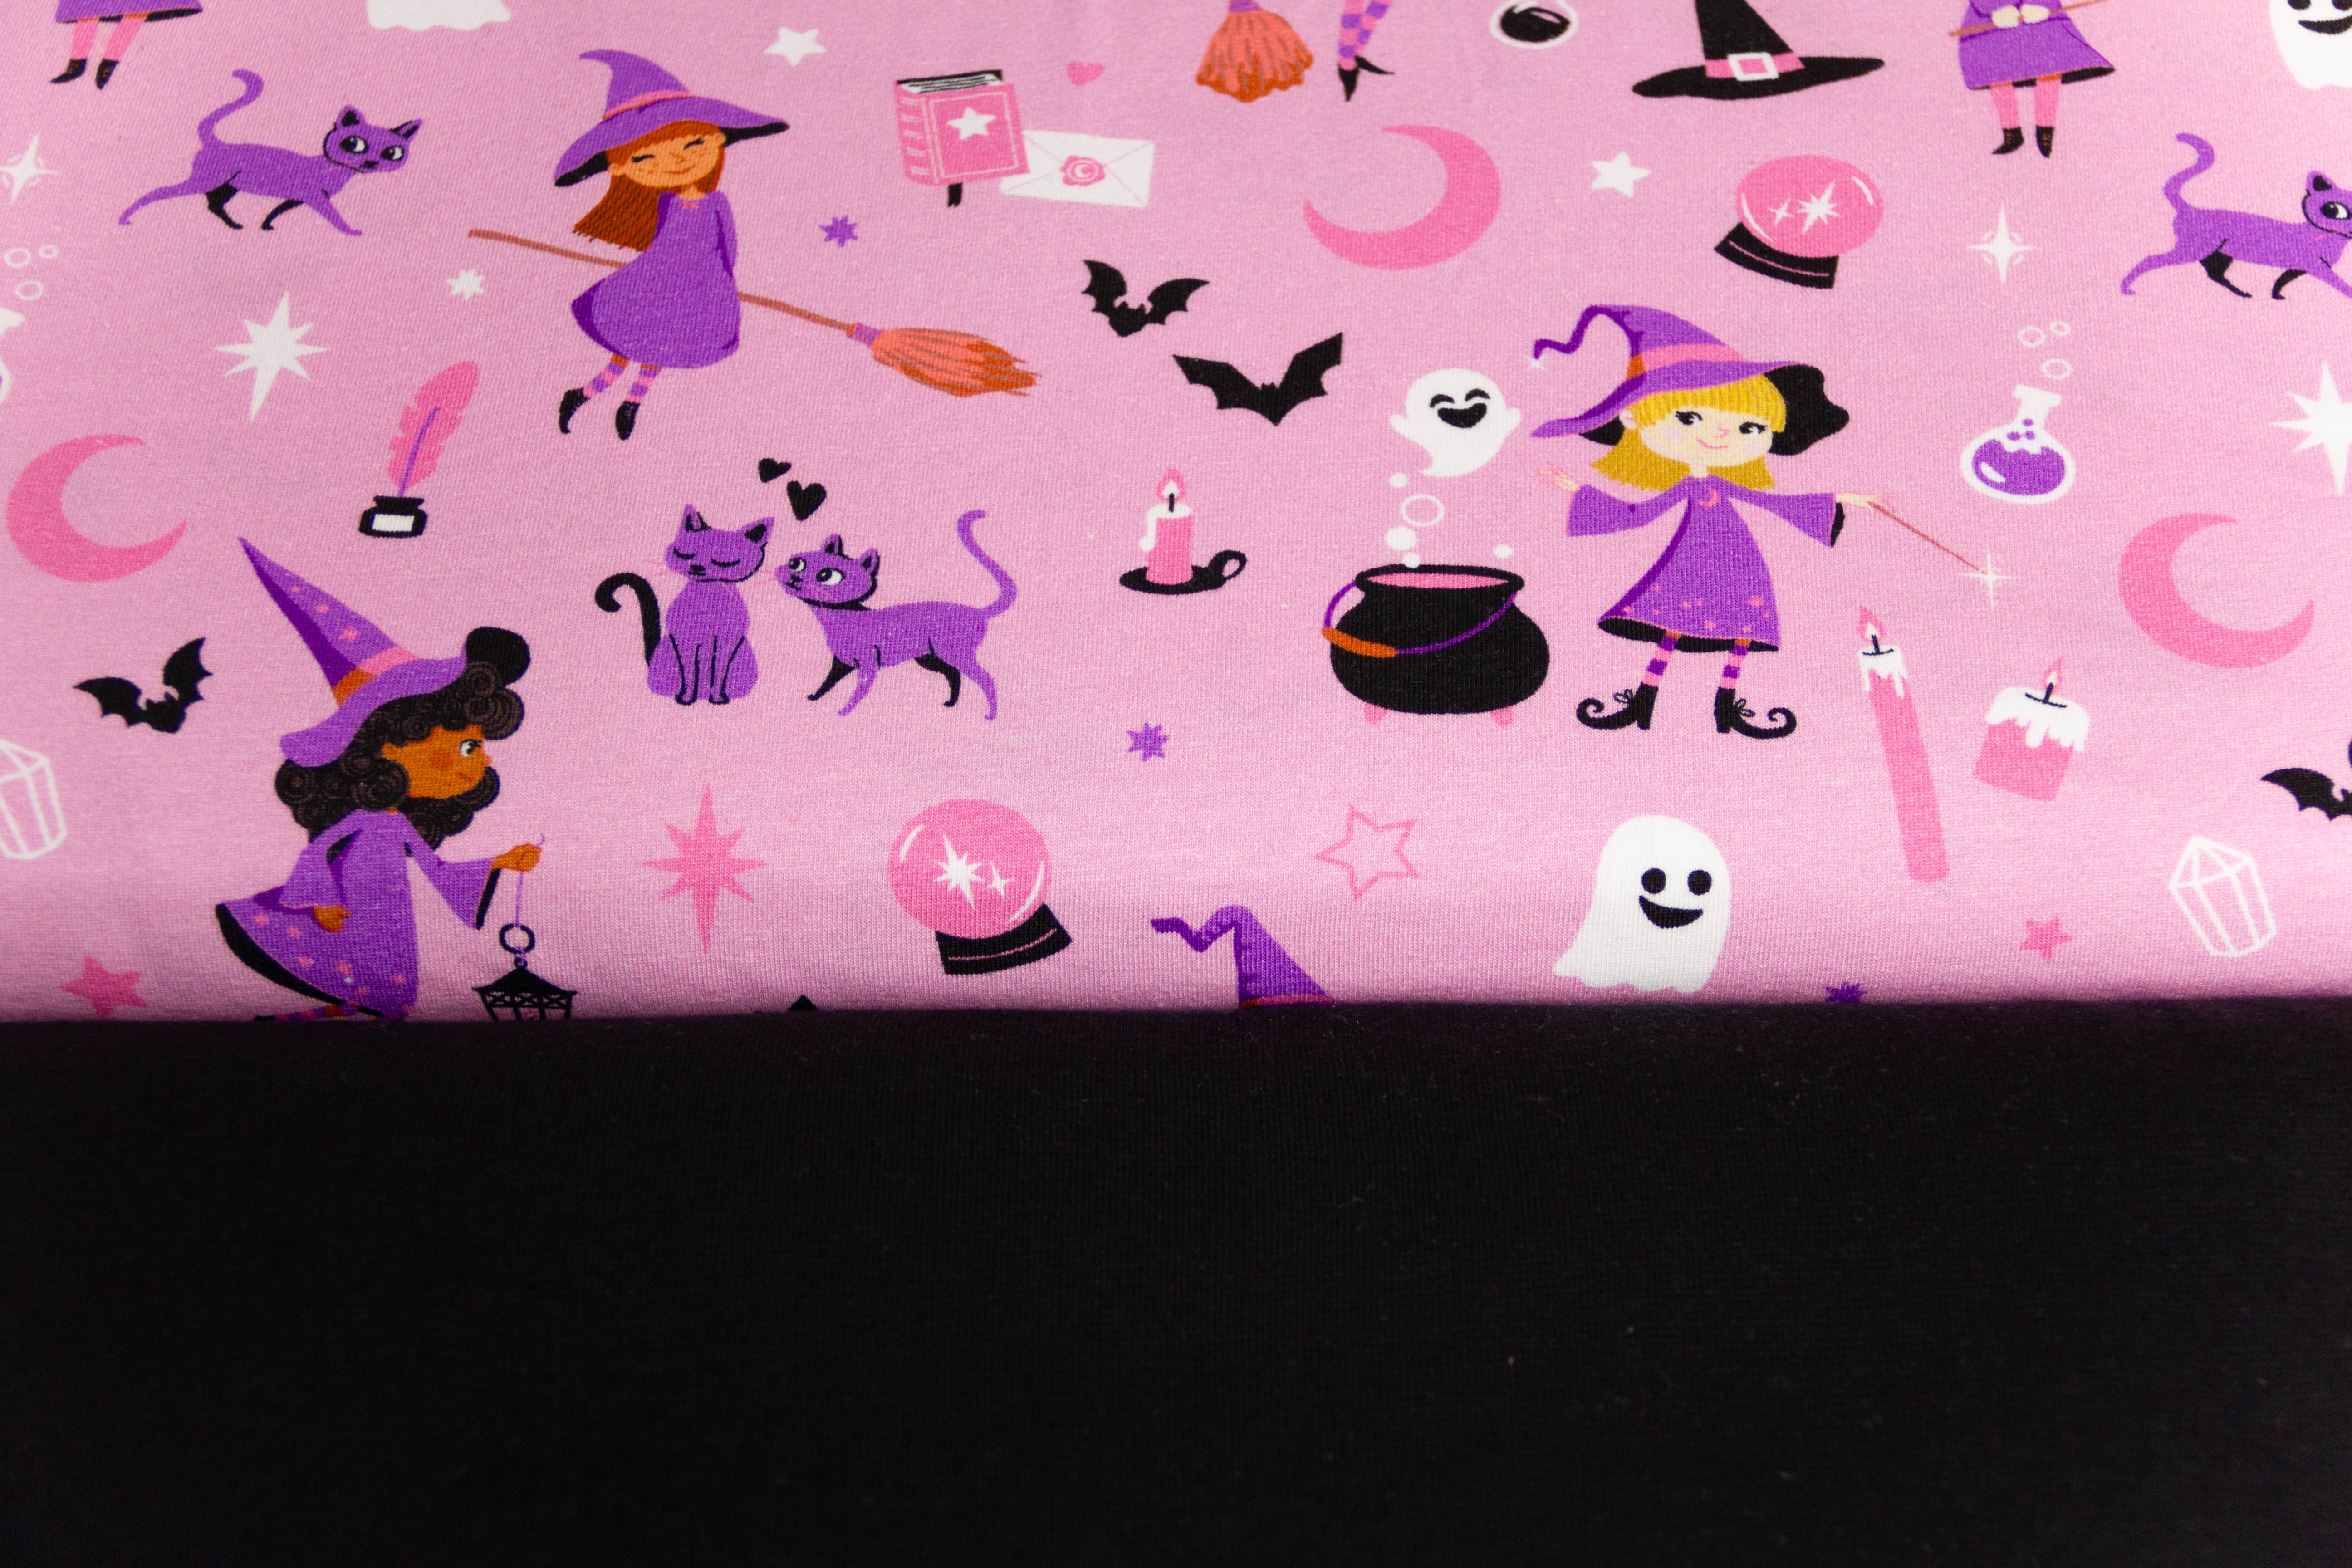 Stoffpaket Jersey + Bündchen mit Hexen, Halloween, rosa, schwarz